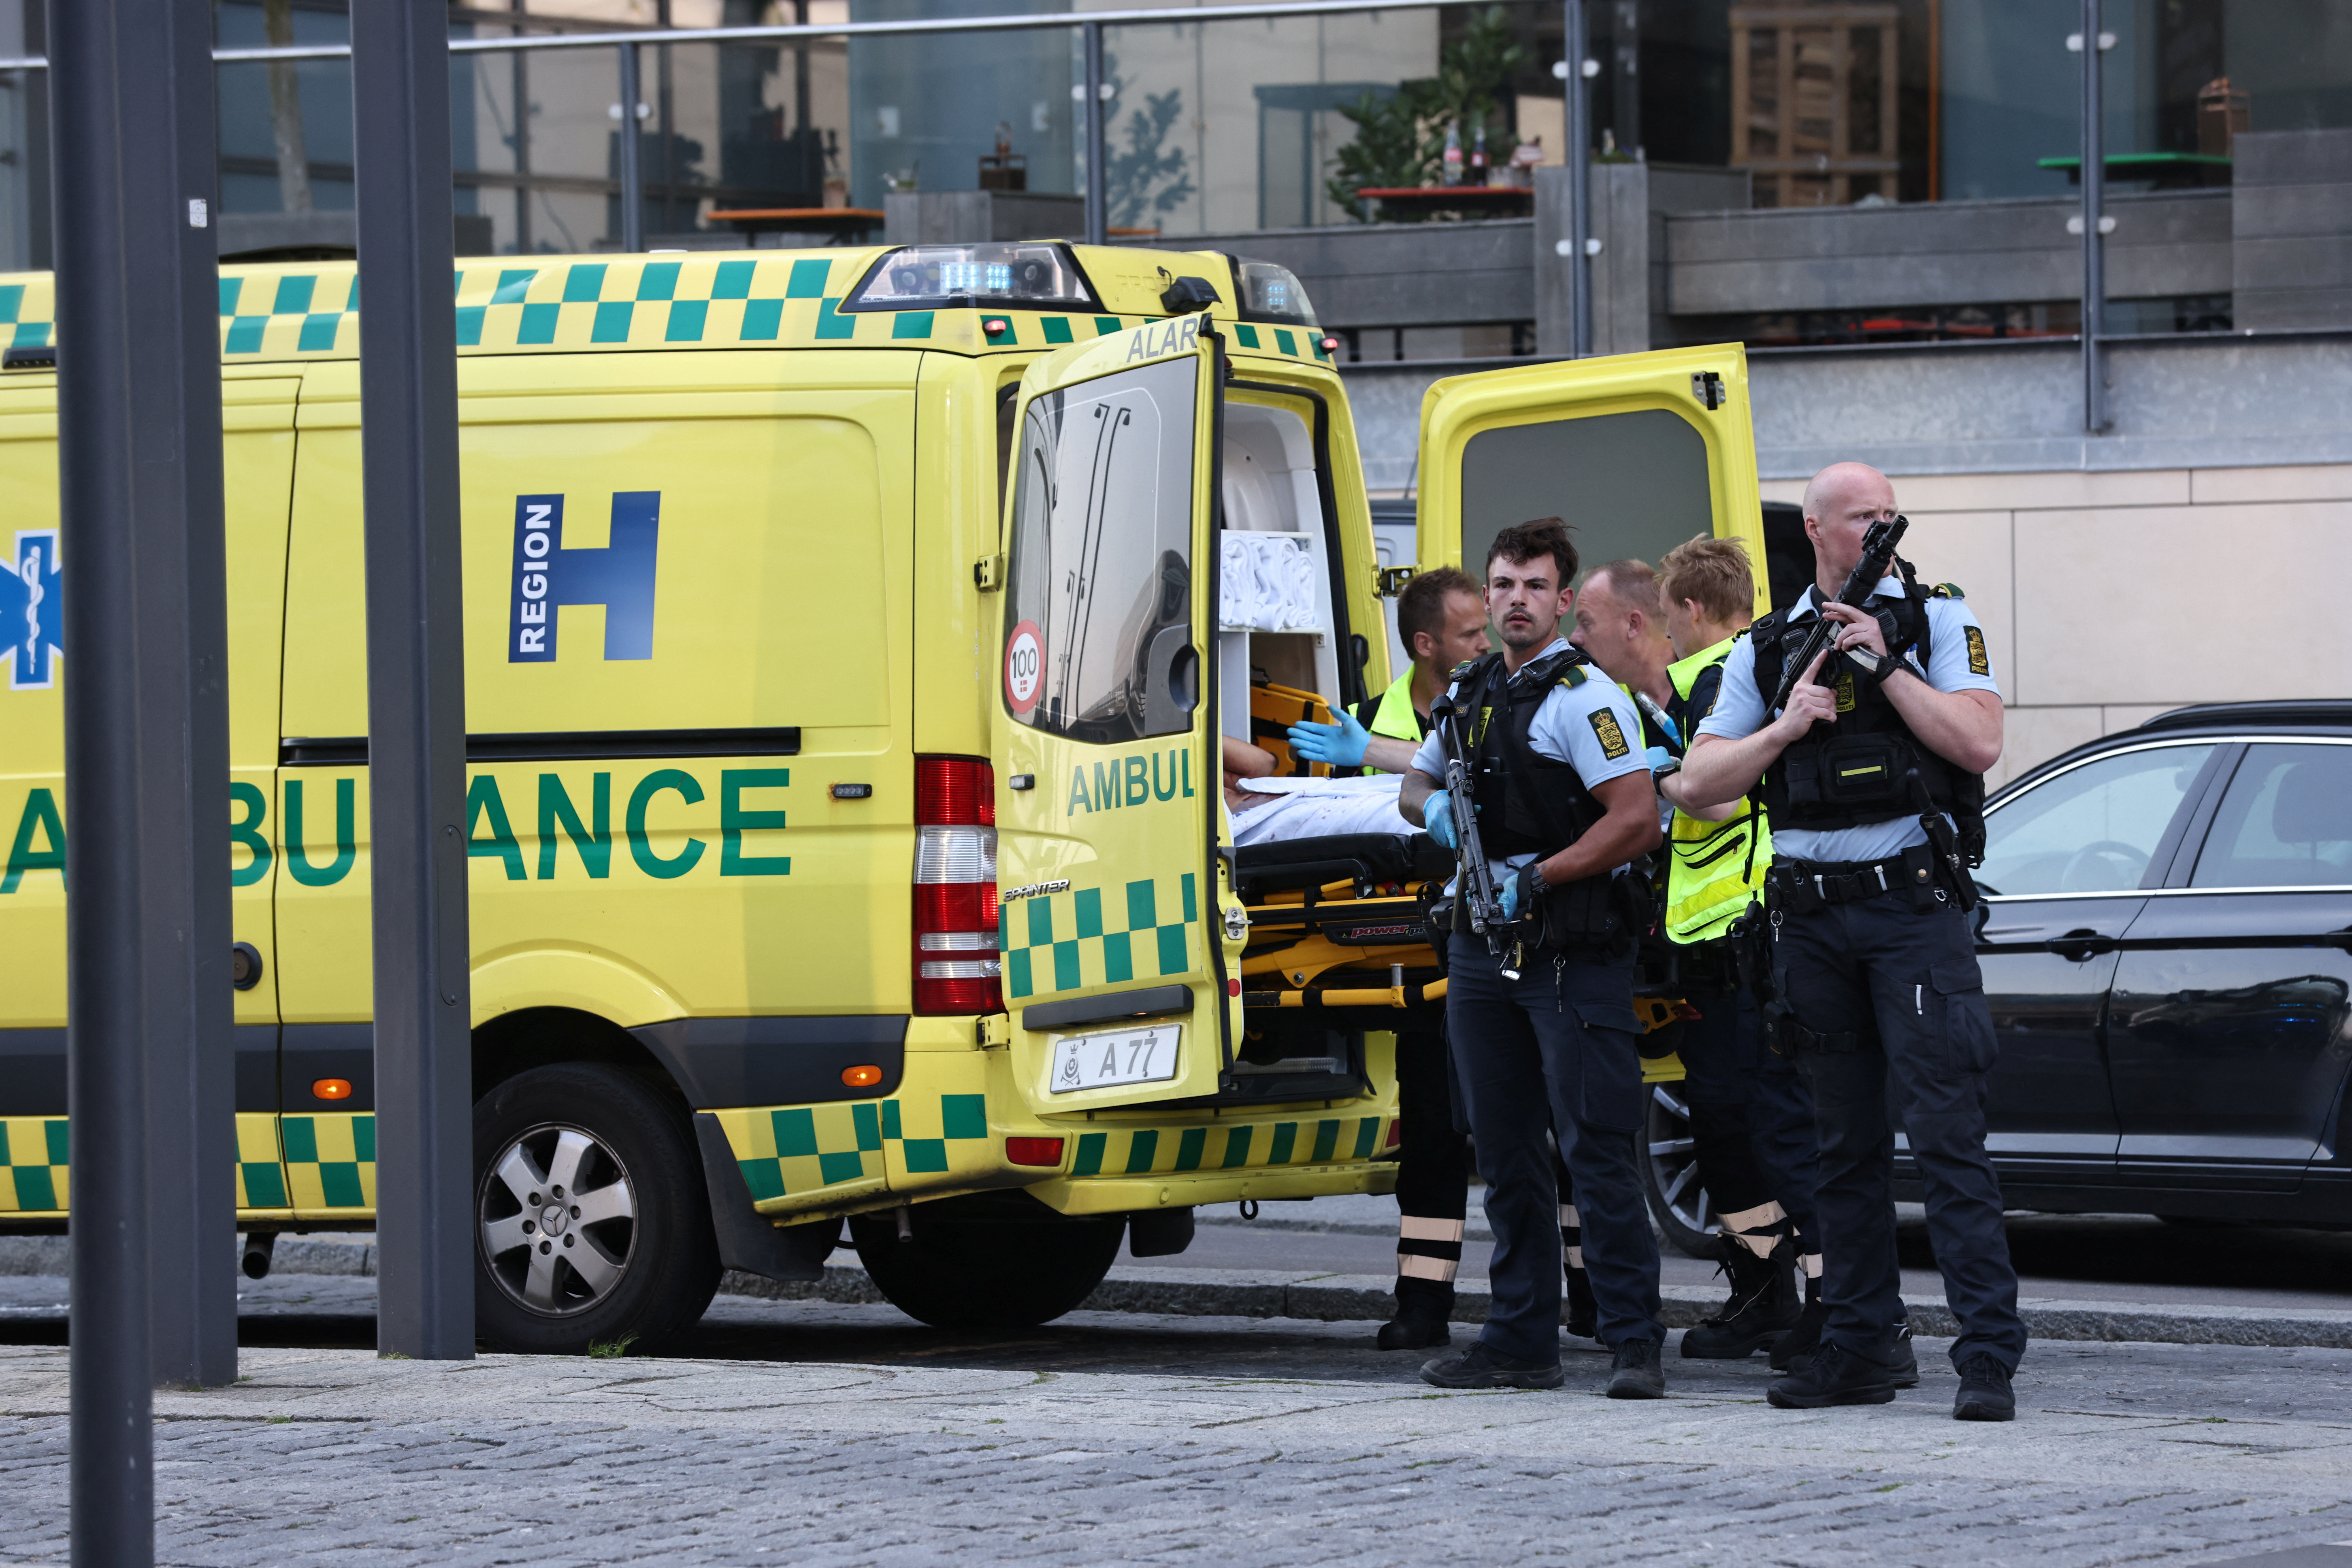 Una ambulancia y policías armados se paran frente al centro comercial de Field, después de que la policía danesa dijo que recibió reportes de disparos, en Copenhague, Dinamarca, el 3 de julio de de 2022.. Ritzau Scanpix/Olafur Steinar Gestsson via REUTERS   